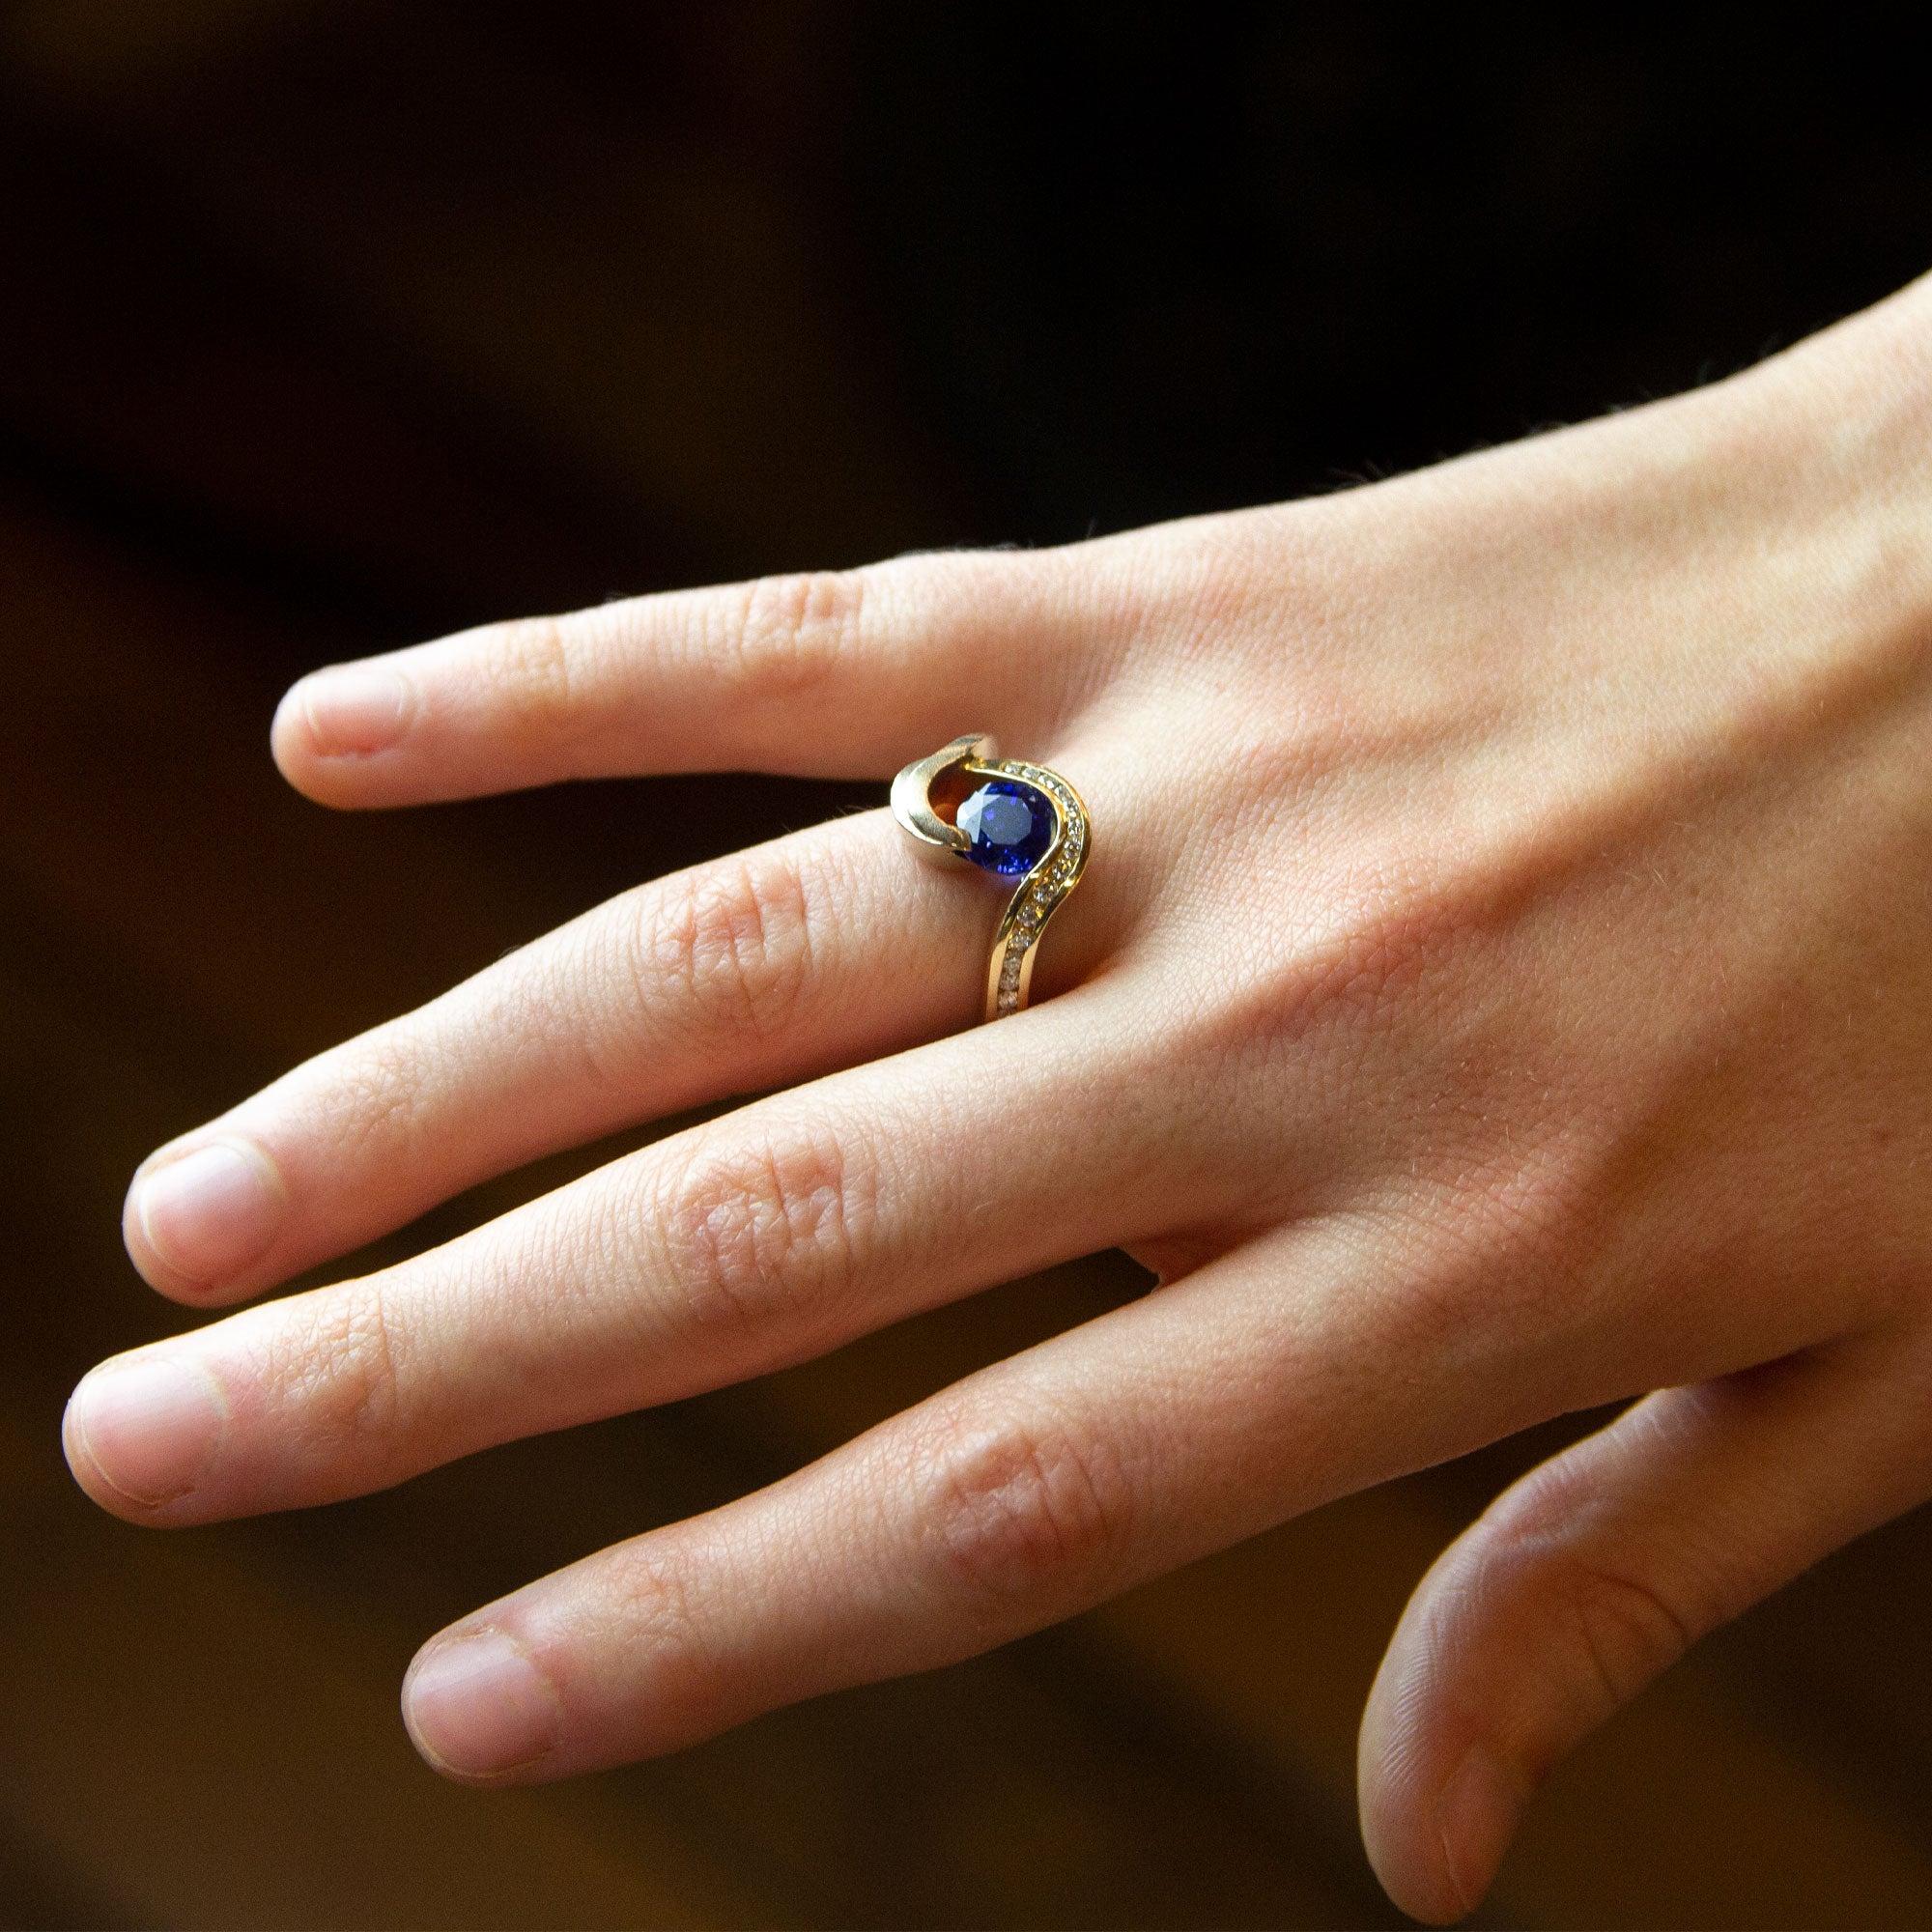 Ein prächtiger Ring aus Ceylon-Saphir und Diamant, gefasst in 14 Karat Gelb- und Weißgold. Der zentrale runde Saphir misst 2,70 Karat und kann als 